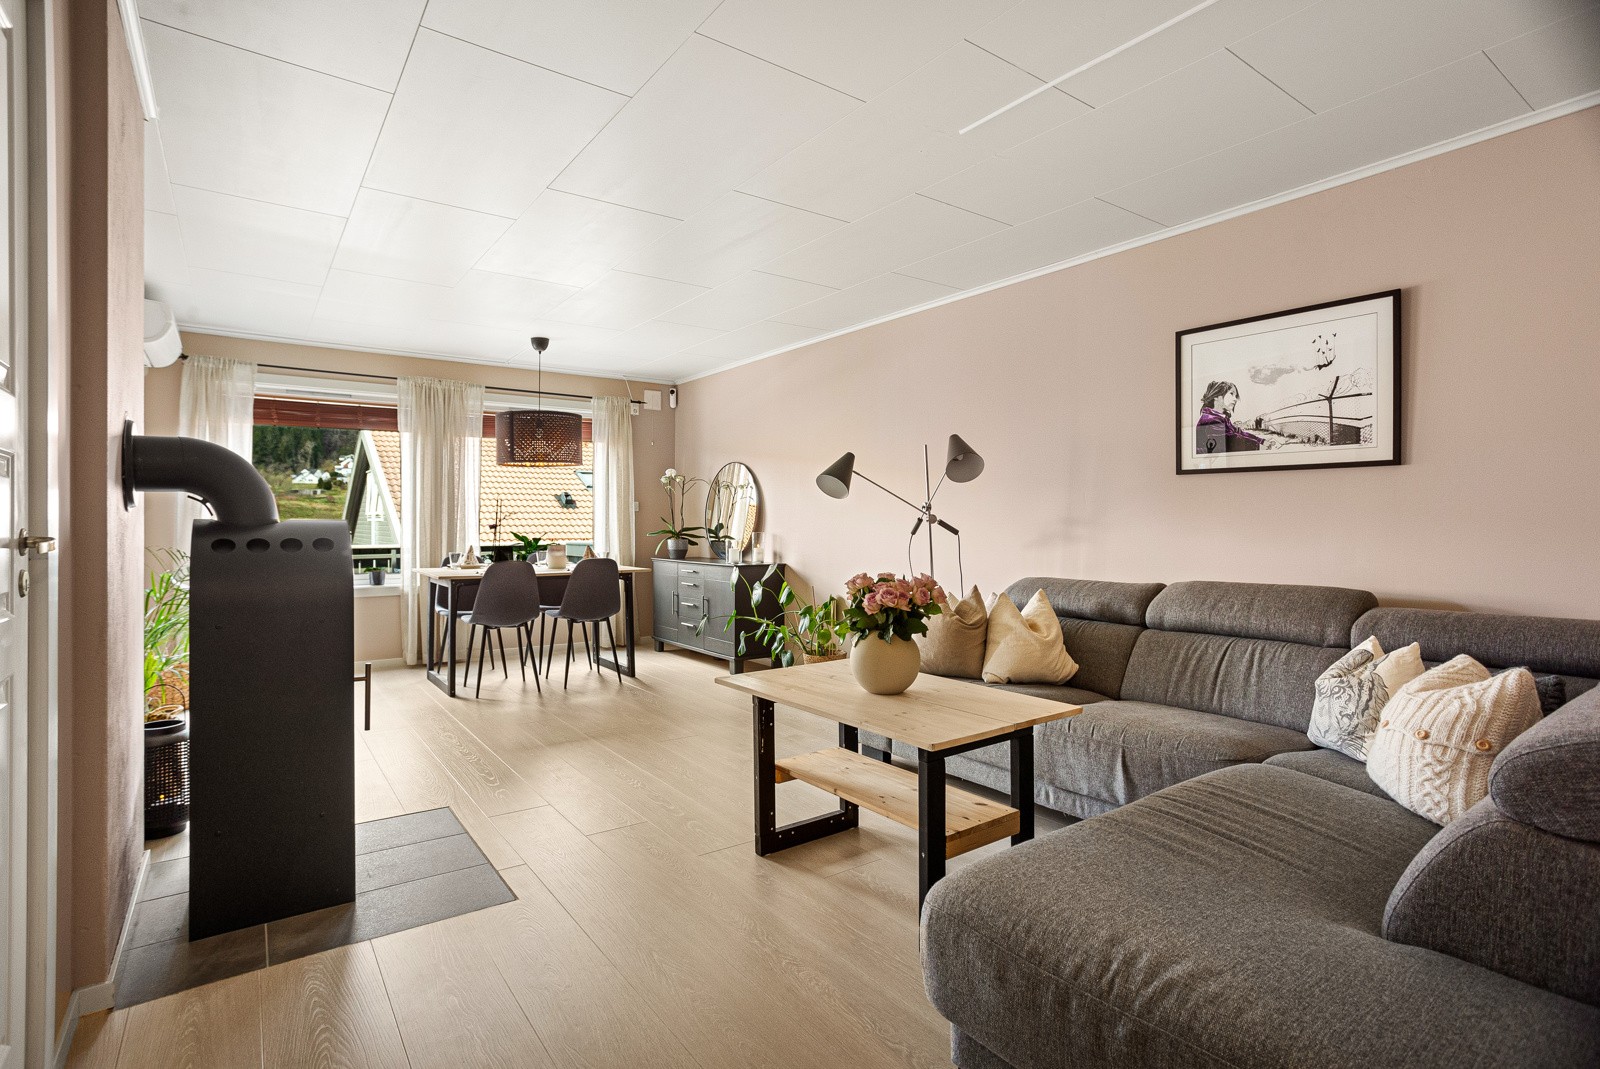 Velkommen til Hesthaugen 50a, en innholdsrik og flott leiligheten med gjennomført valg av gulv, fargene på veggene og moderne innredning på badet.